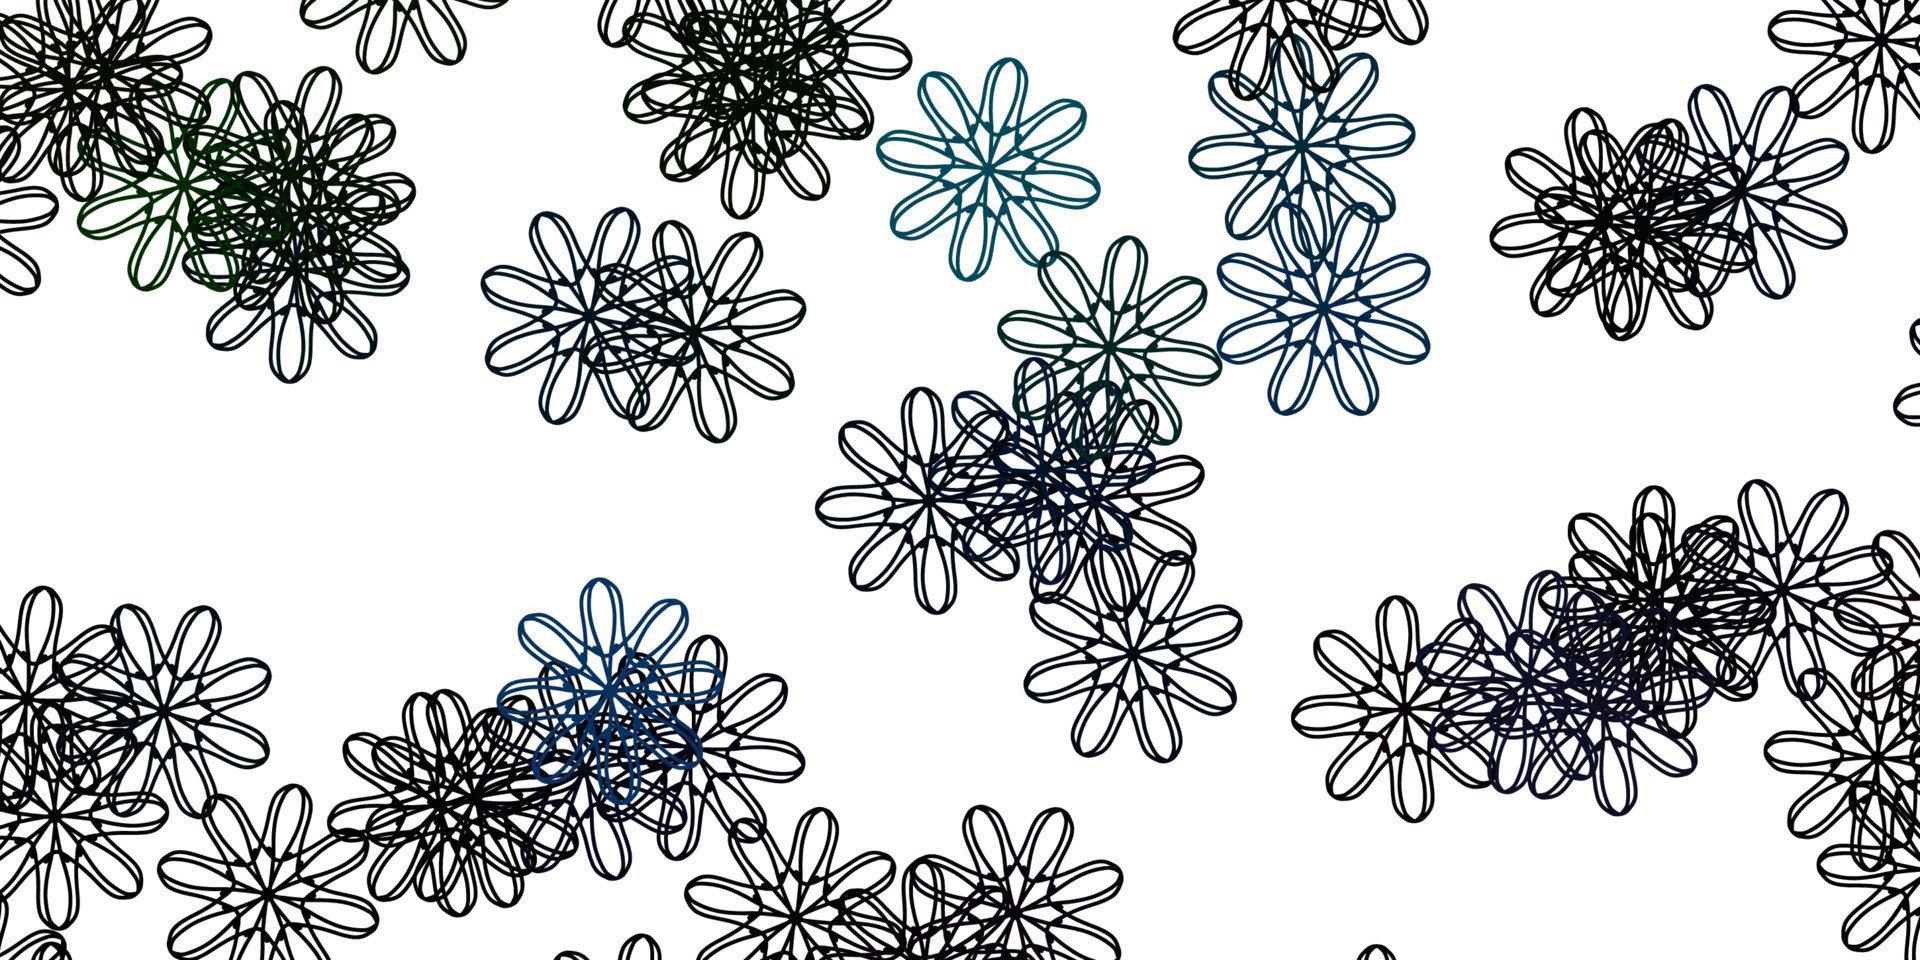 ljusblå, grön vektor doodle mall med blommor.